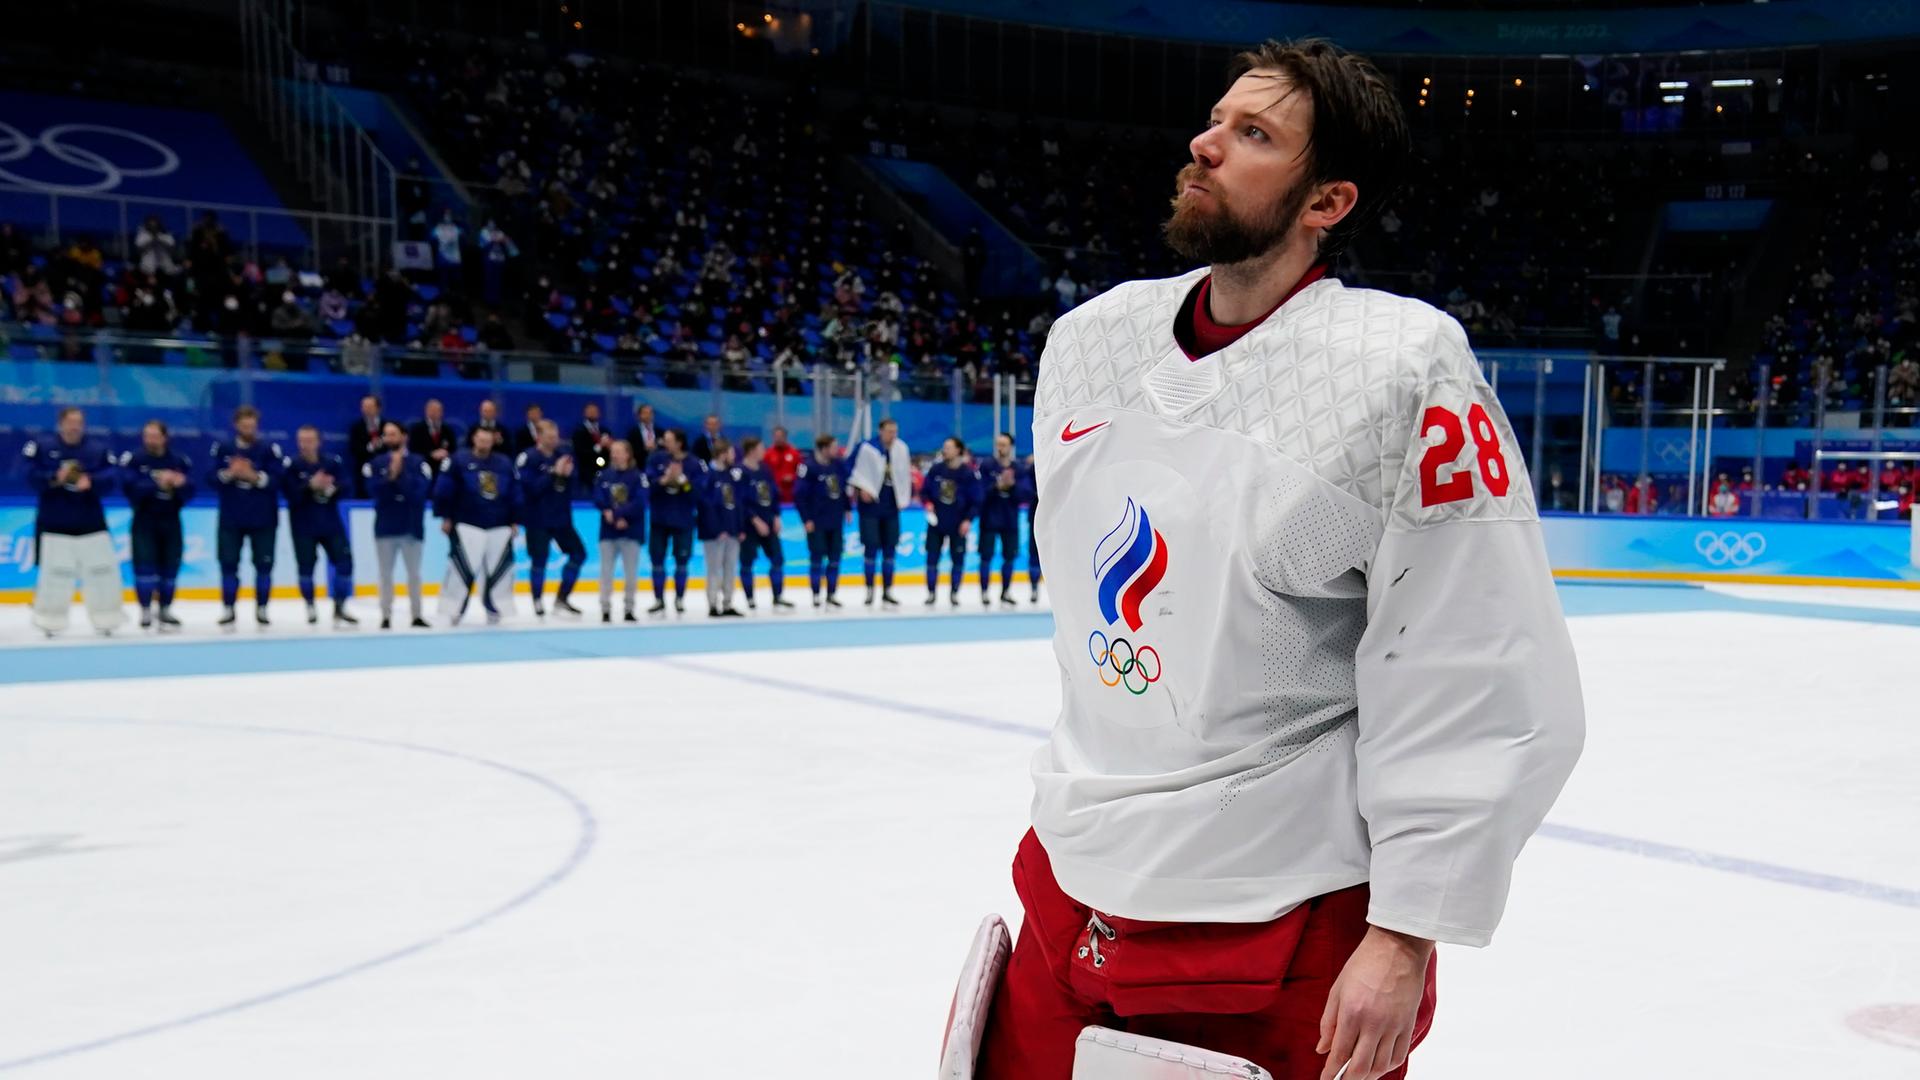 Eishockey - Russischer Nationaltorwart laut Medienberichten festgenommen